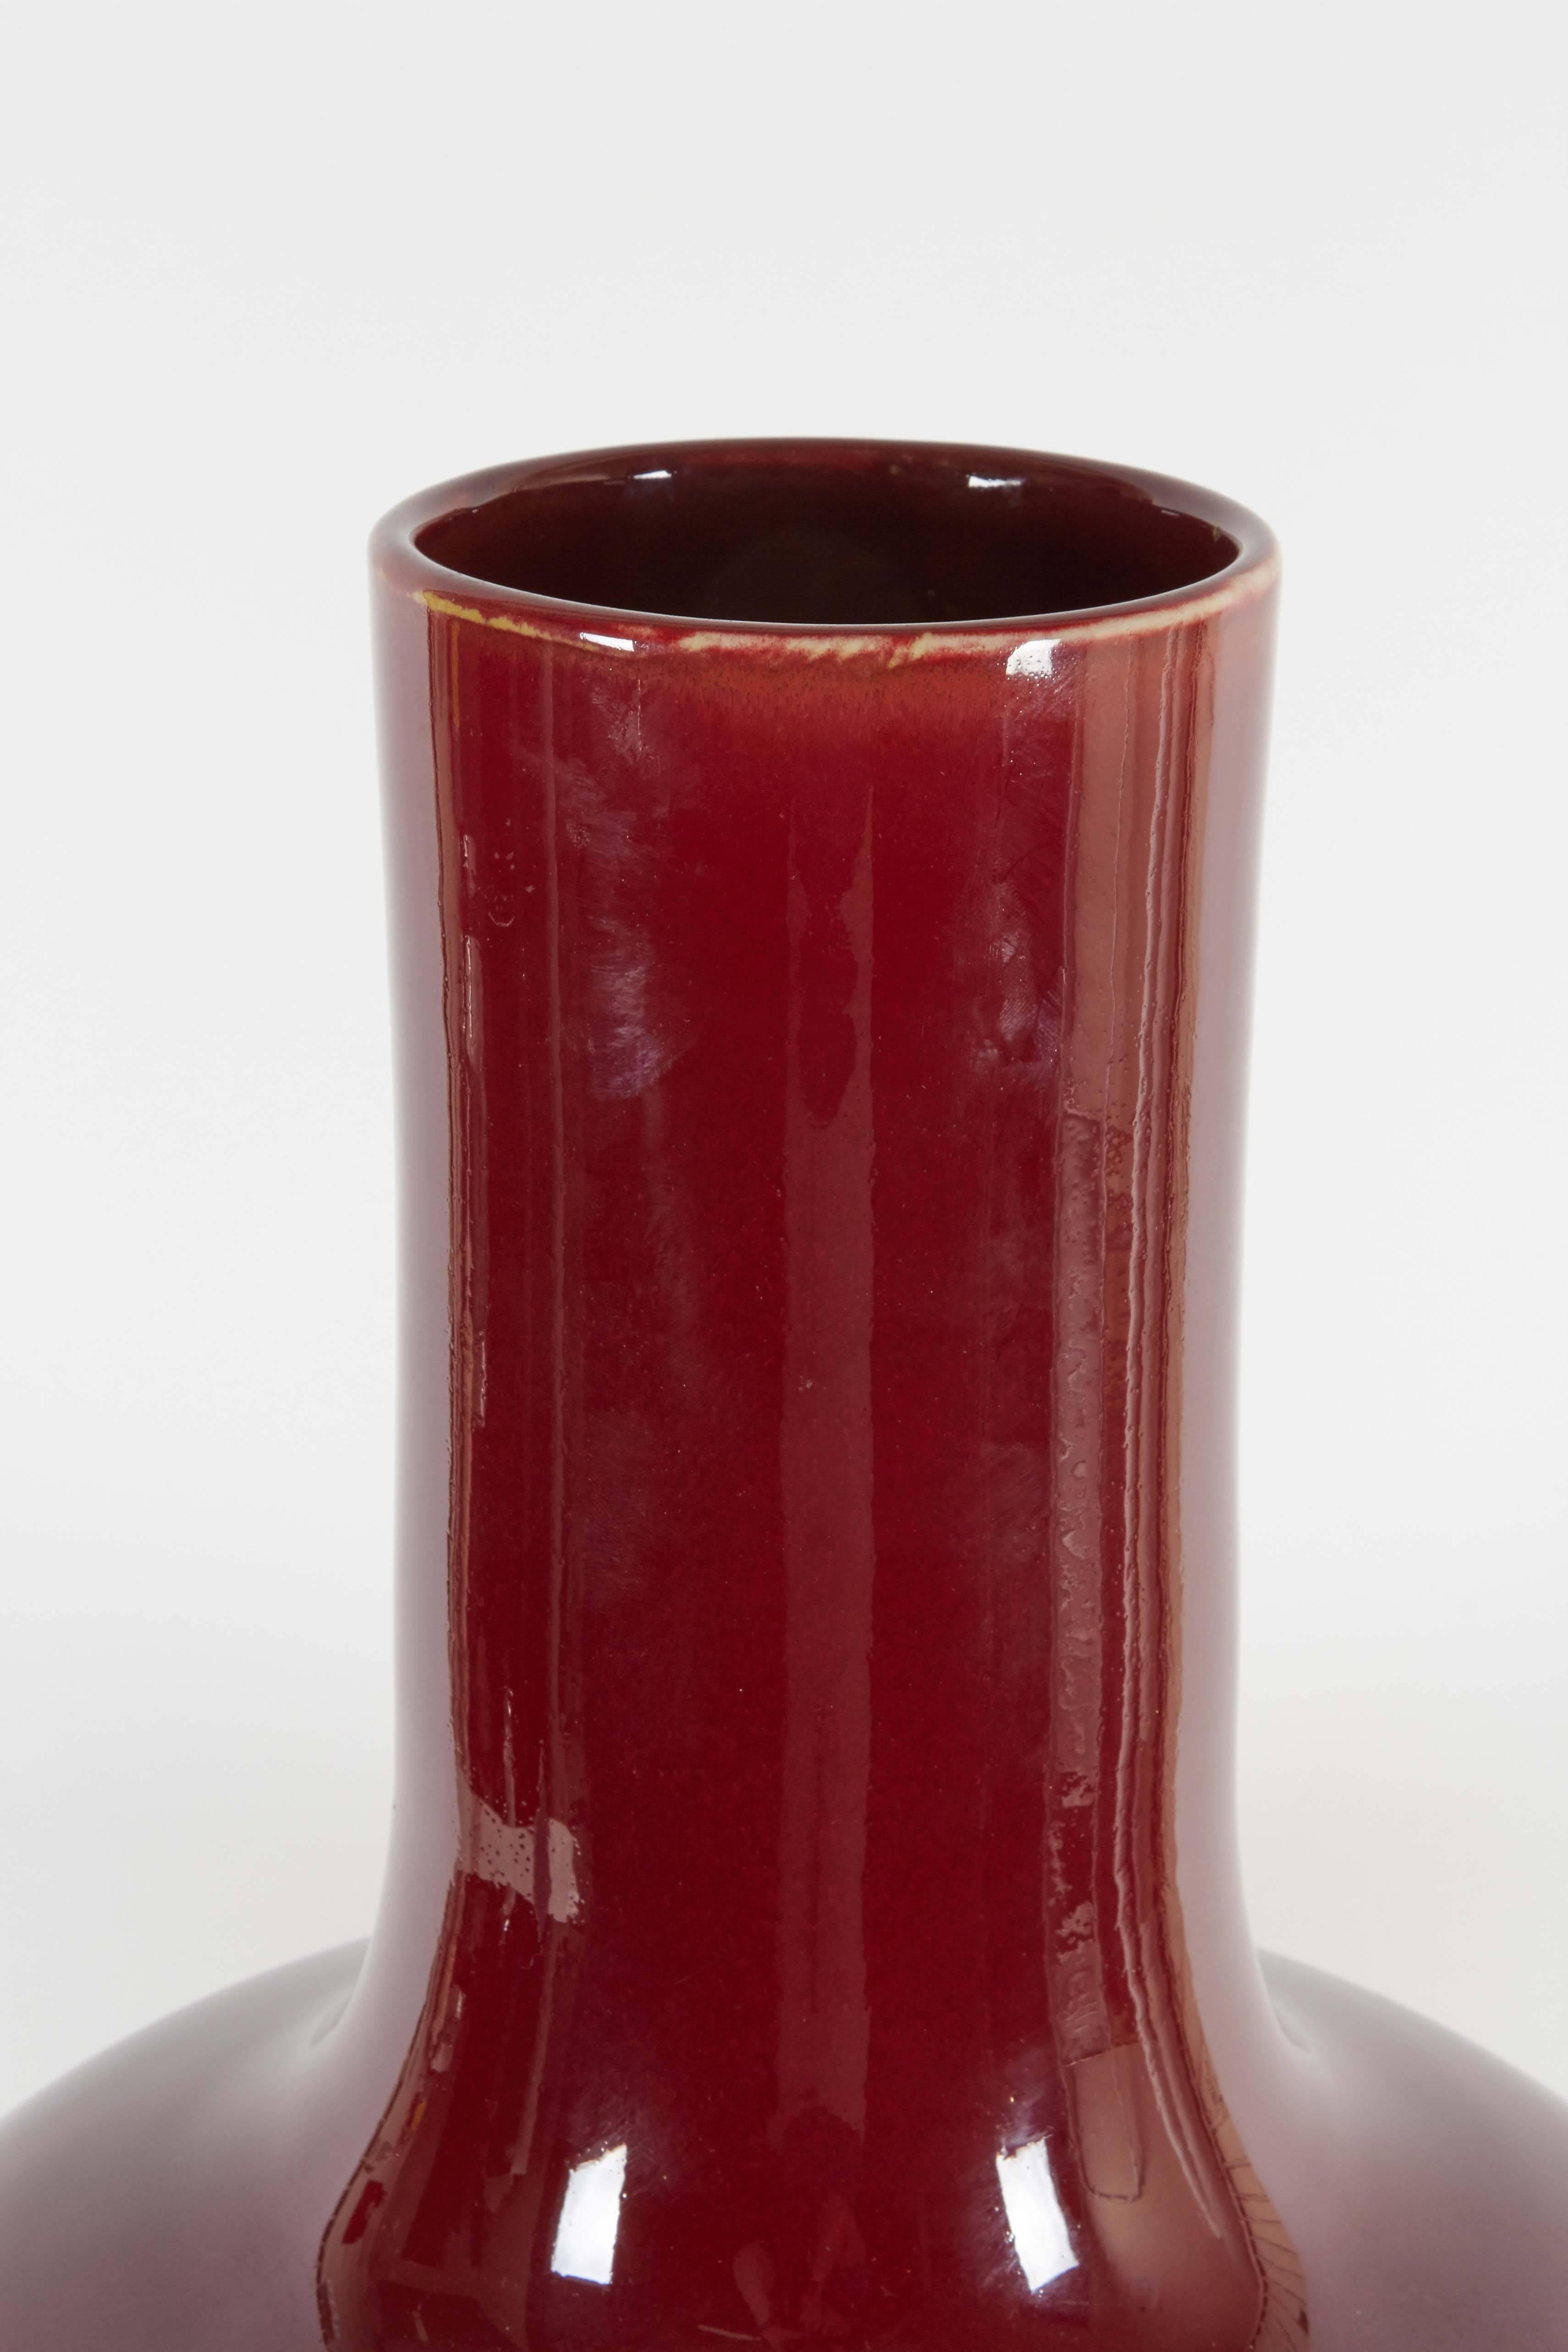 Eine chinesische Keramikvase, ca. 1930-1940er Jahre, tiefrot glasiert. Enthält Flecken am Sockel. Dieses Stück bleibt in sehr gutem Zustand, Verschleiß an der Basis im Einklang mit dem Alter.

10434